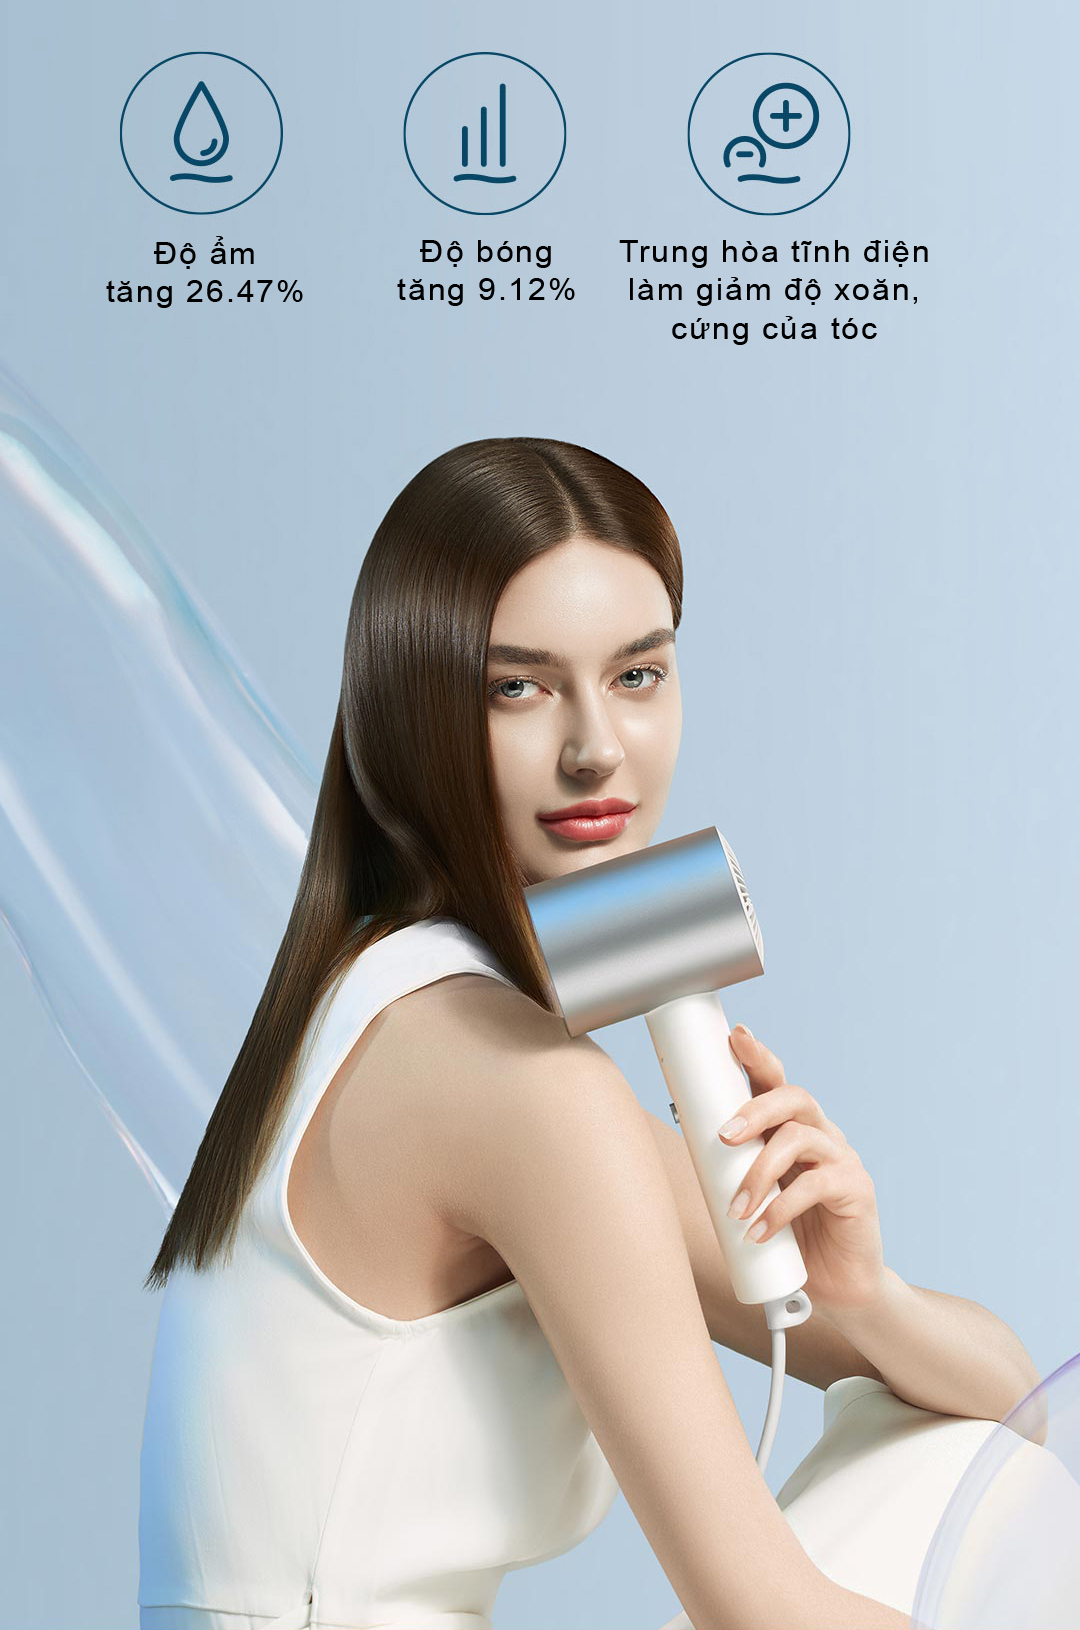 Máy sấy tóc ion Xiaomi H500 là chiếc máy có khả năng dưỡng ẩm hiệu quả cho tóc, giảm chẻ ngọn và hạn chế xơ rối